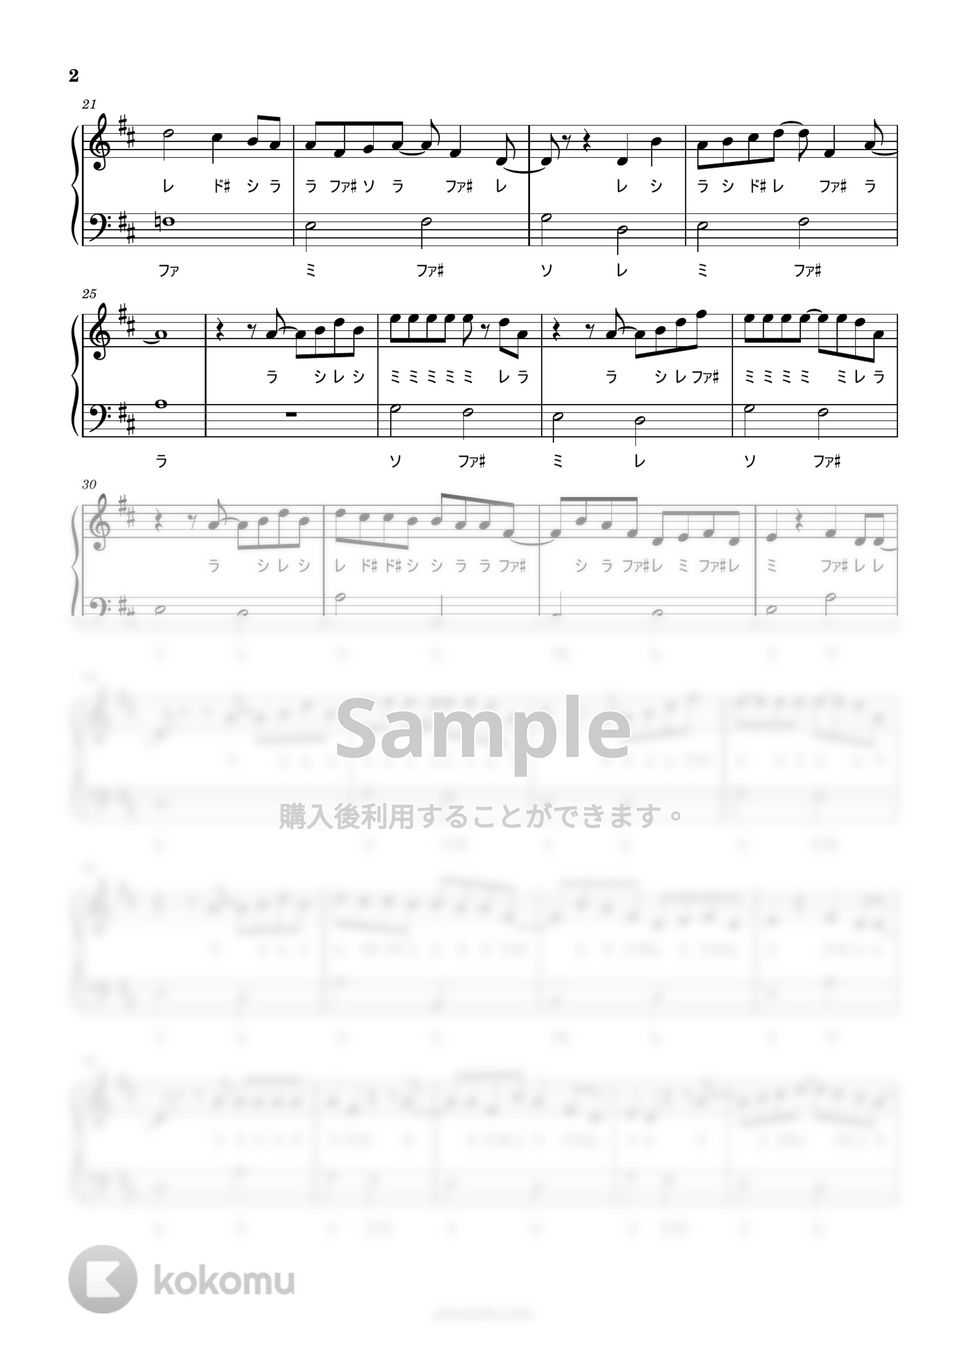 スパイファミリー - SOUVENIR (ドレミ付き簡単楽譜) by ピアノ塾